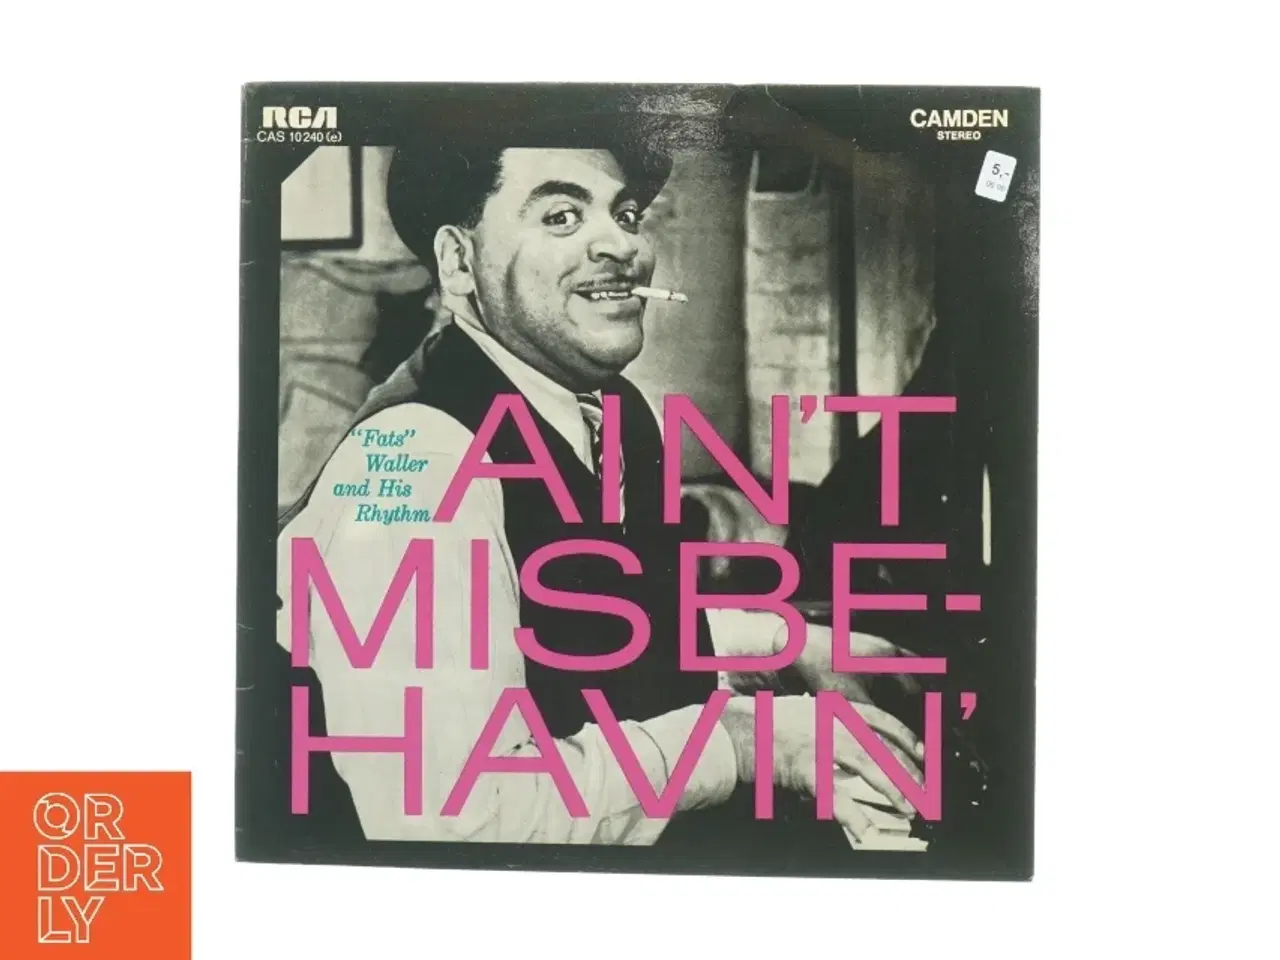 Billede 1 - Ain't Misbehavin af Fats Waller and His Rhythm (LP) fra RCA Camden (str. 31 x 31 cm)